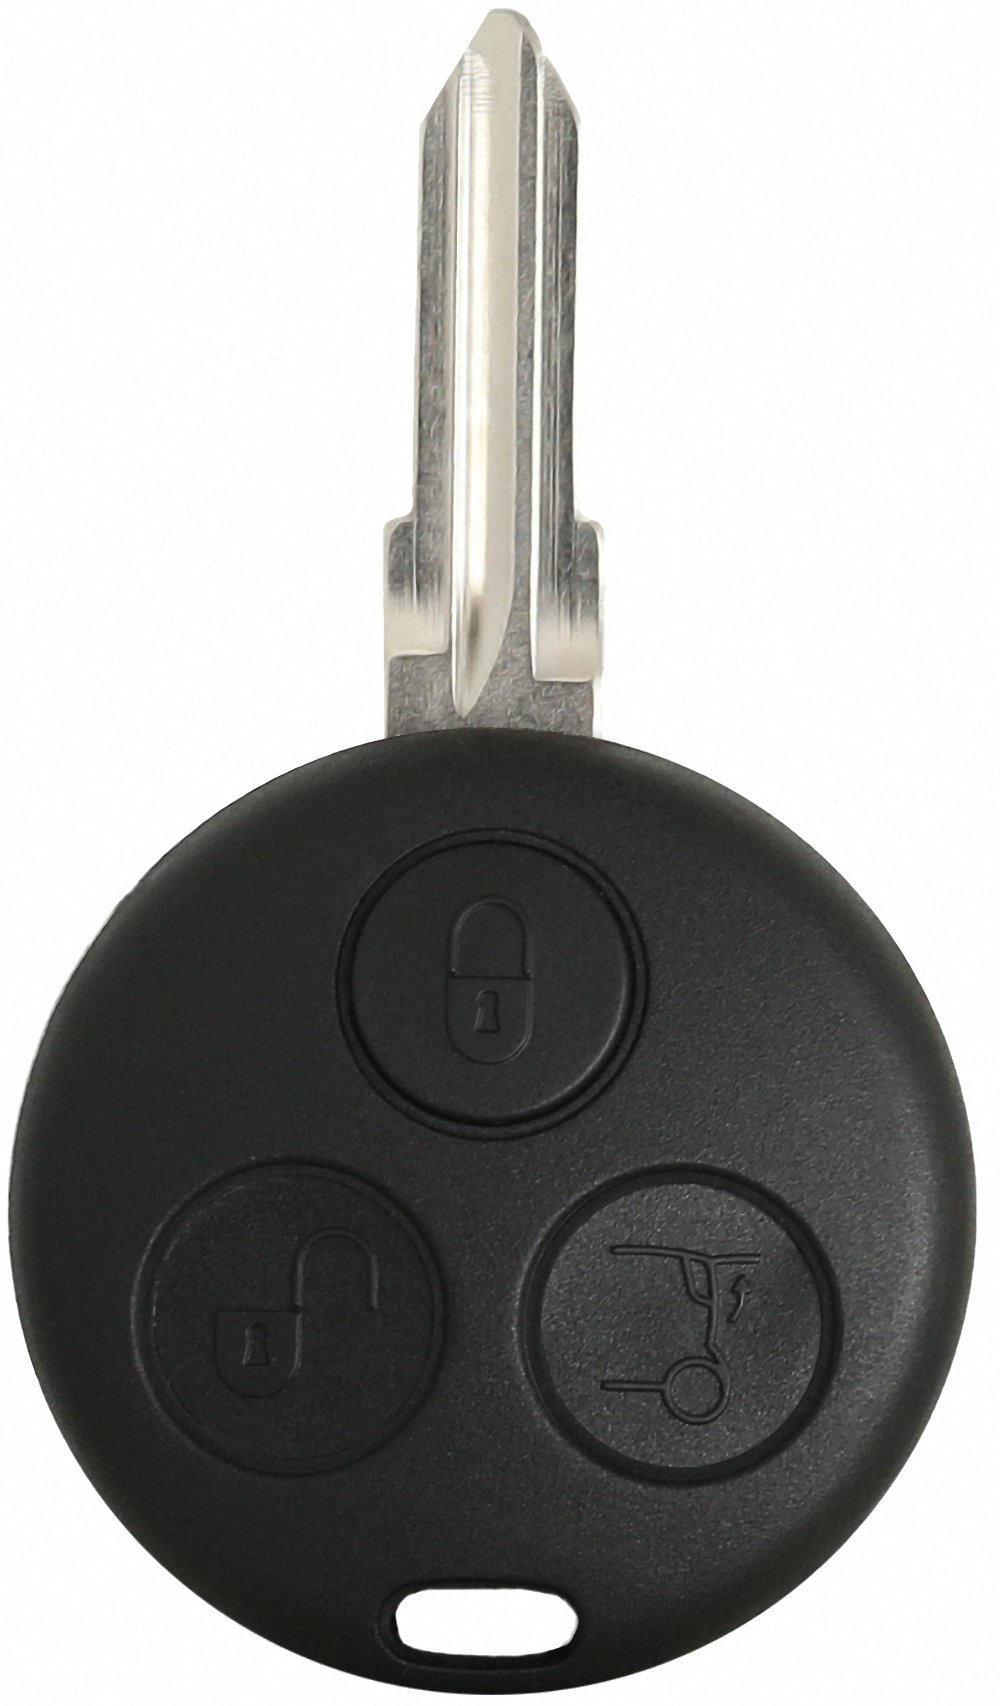 Liamgate Ersatz Schlüssel mit Rohling geeignet für Smart Schlüssel Gehäuse mit 3 Tasten passend für Smart 450 von Liamgate